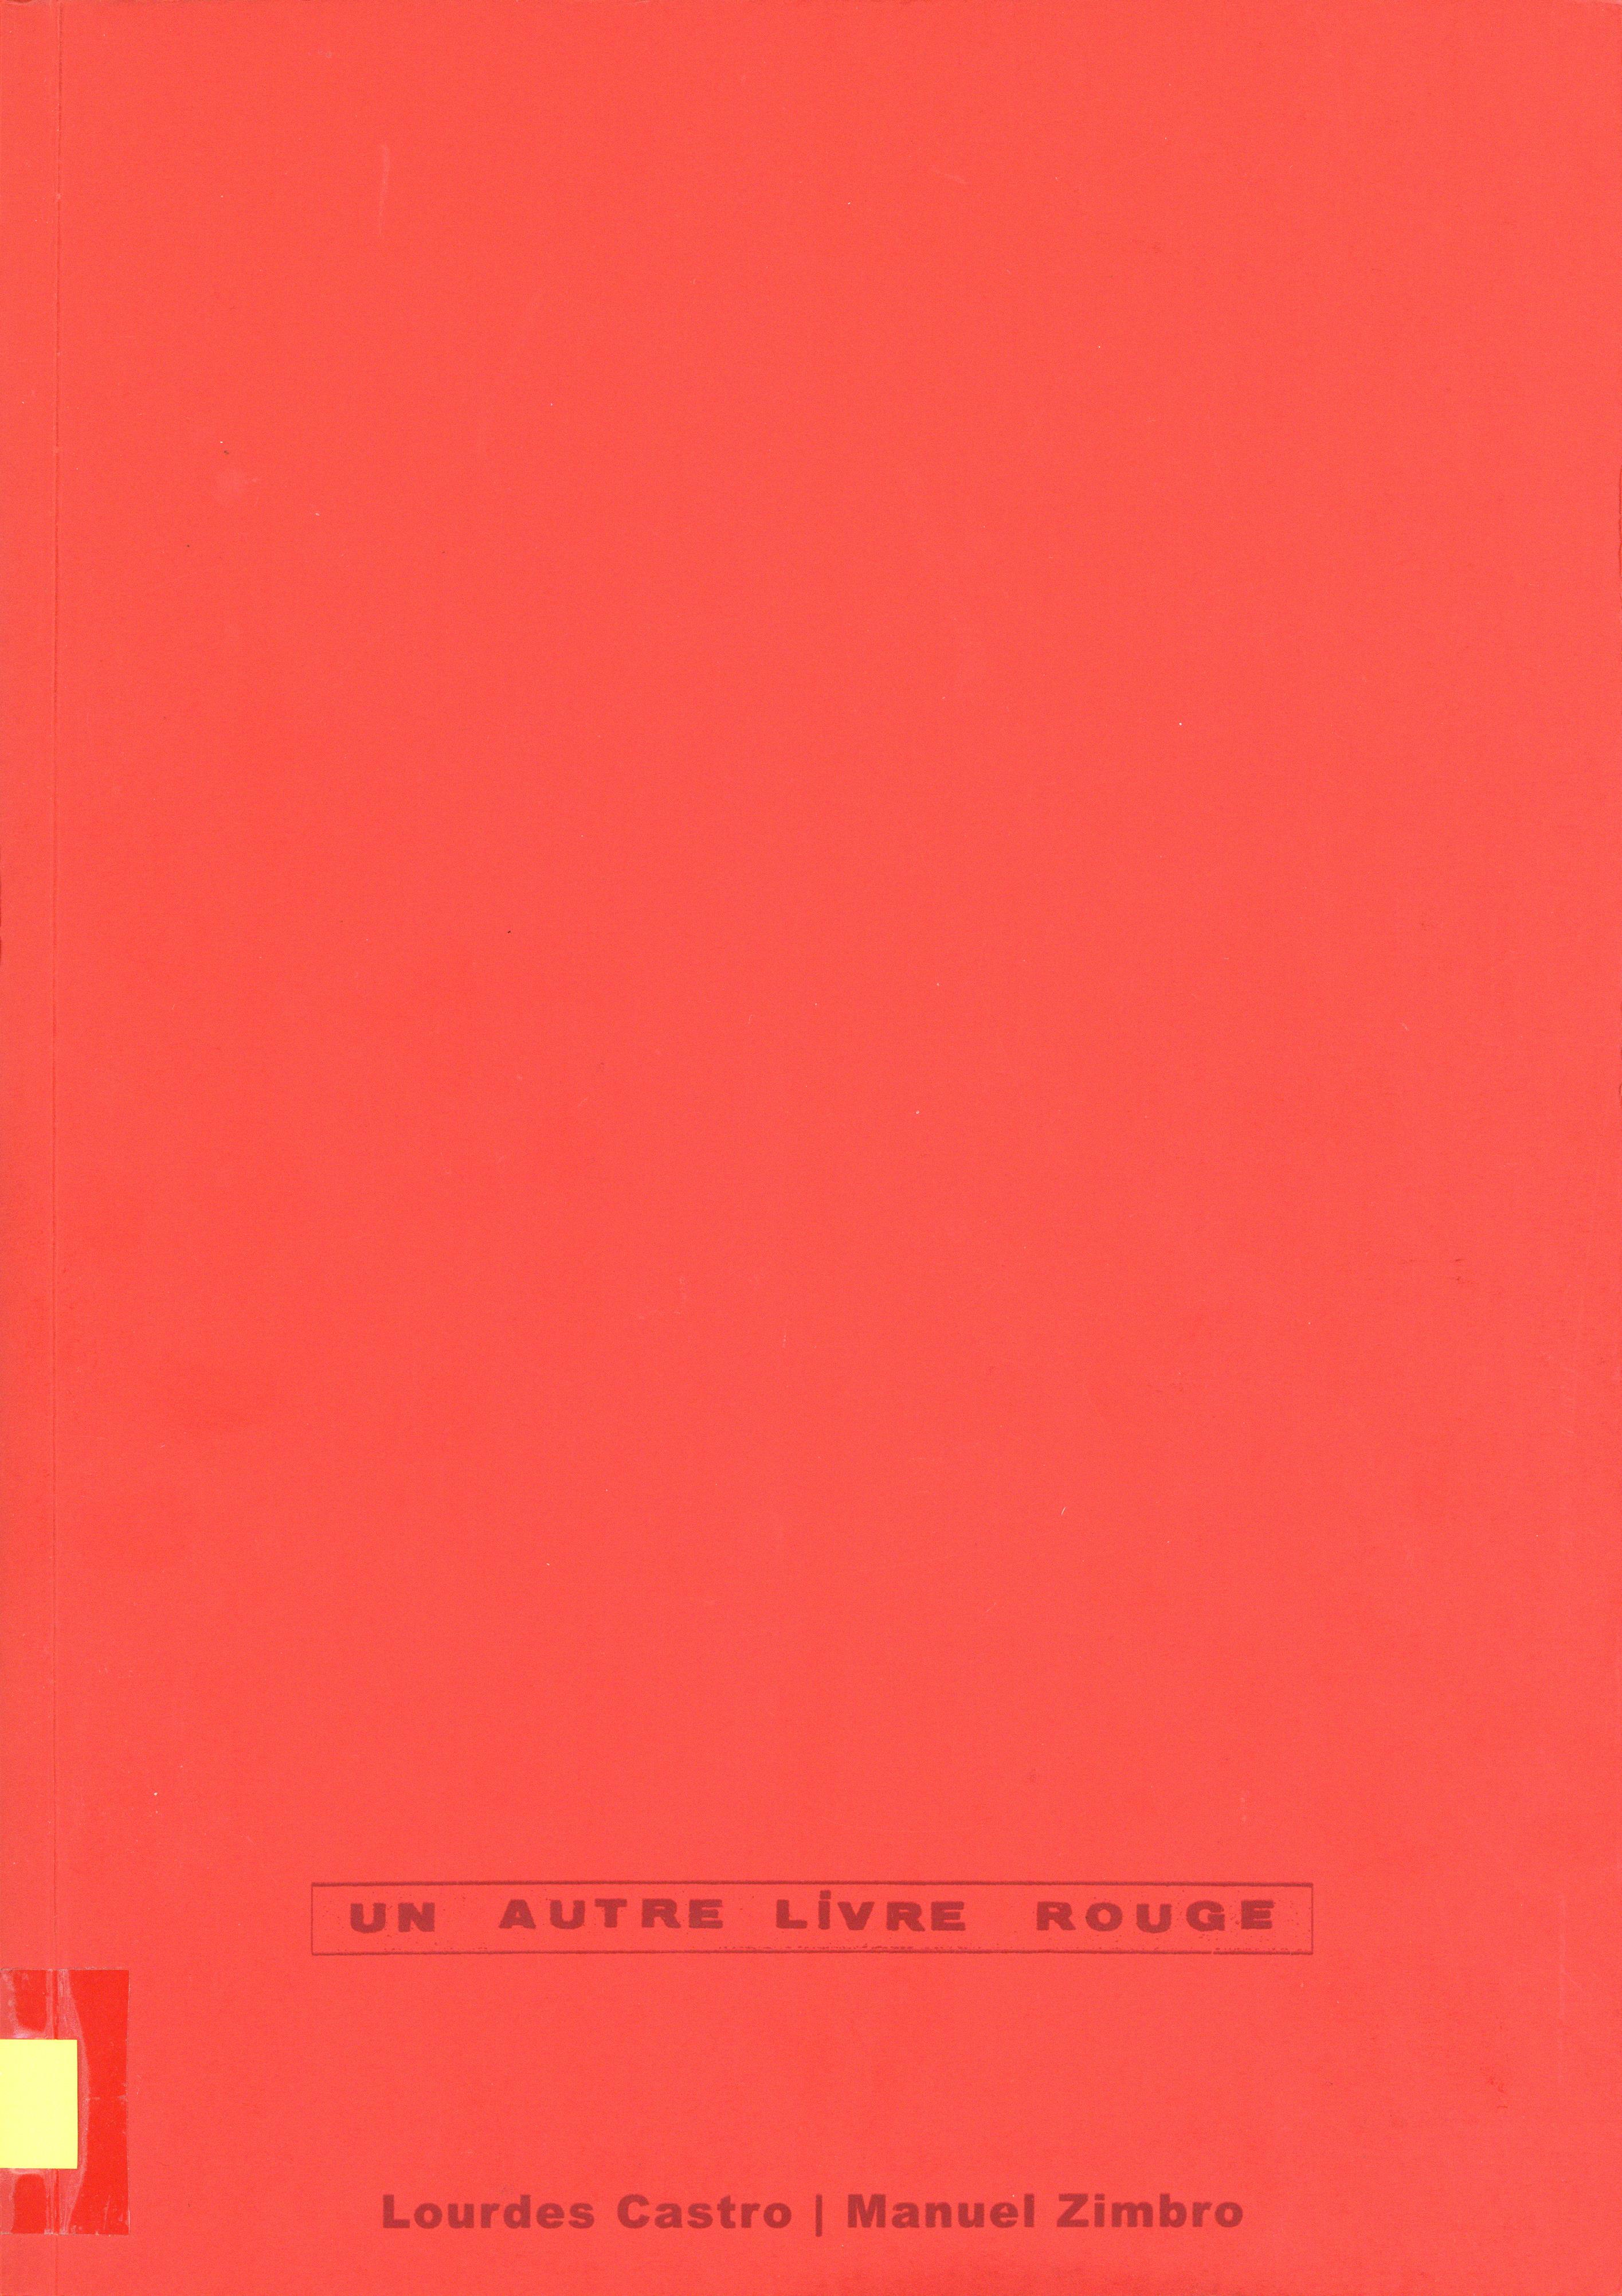 Un Autre Livre Rouge. Lourdes Castro | Manuel Zimbro